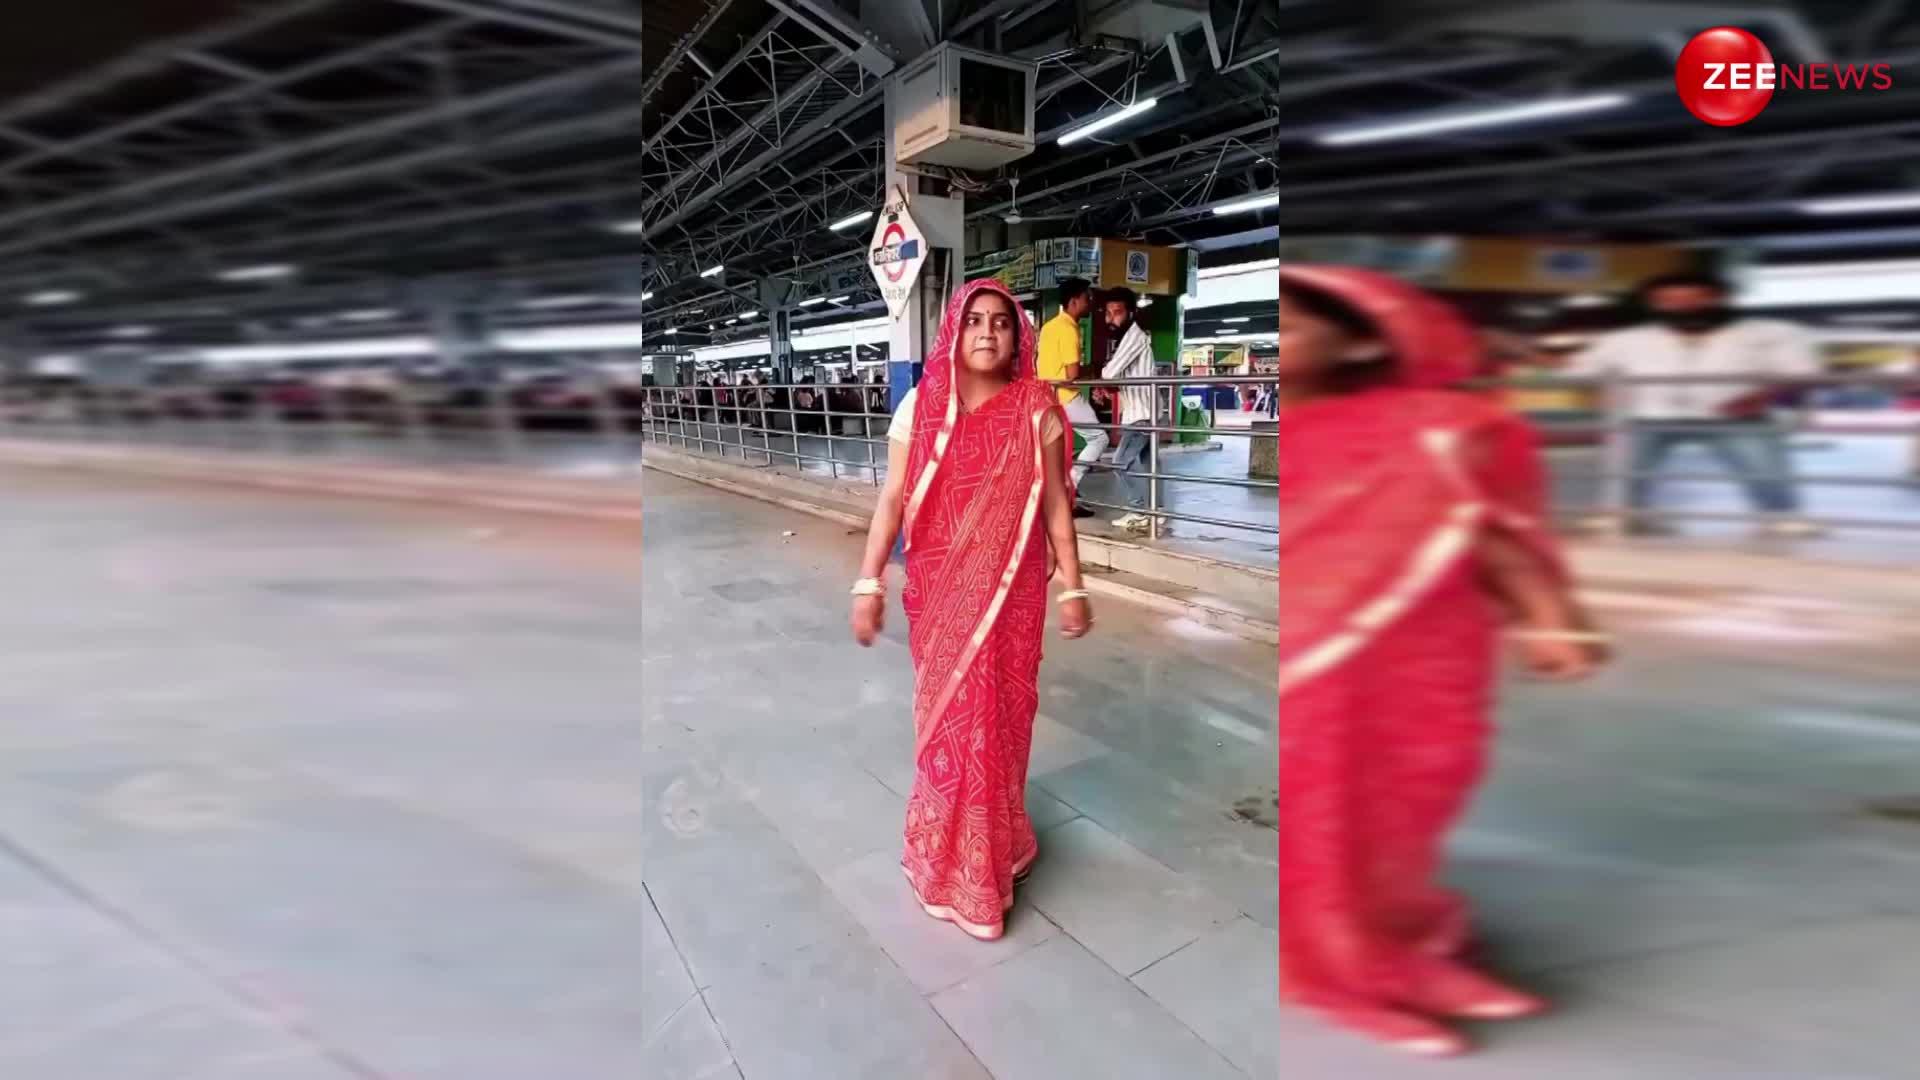 Railway station dance video: दिल्ली मेट्रो नहीं आंटी ने रेलवे स्टेशन में किया सेक्सी डांस. देख पीछे वाले लड़को ने लूटे खूब मजे